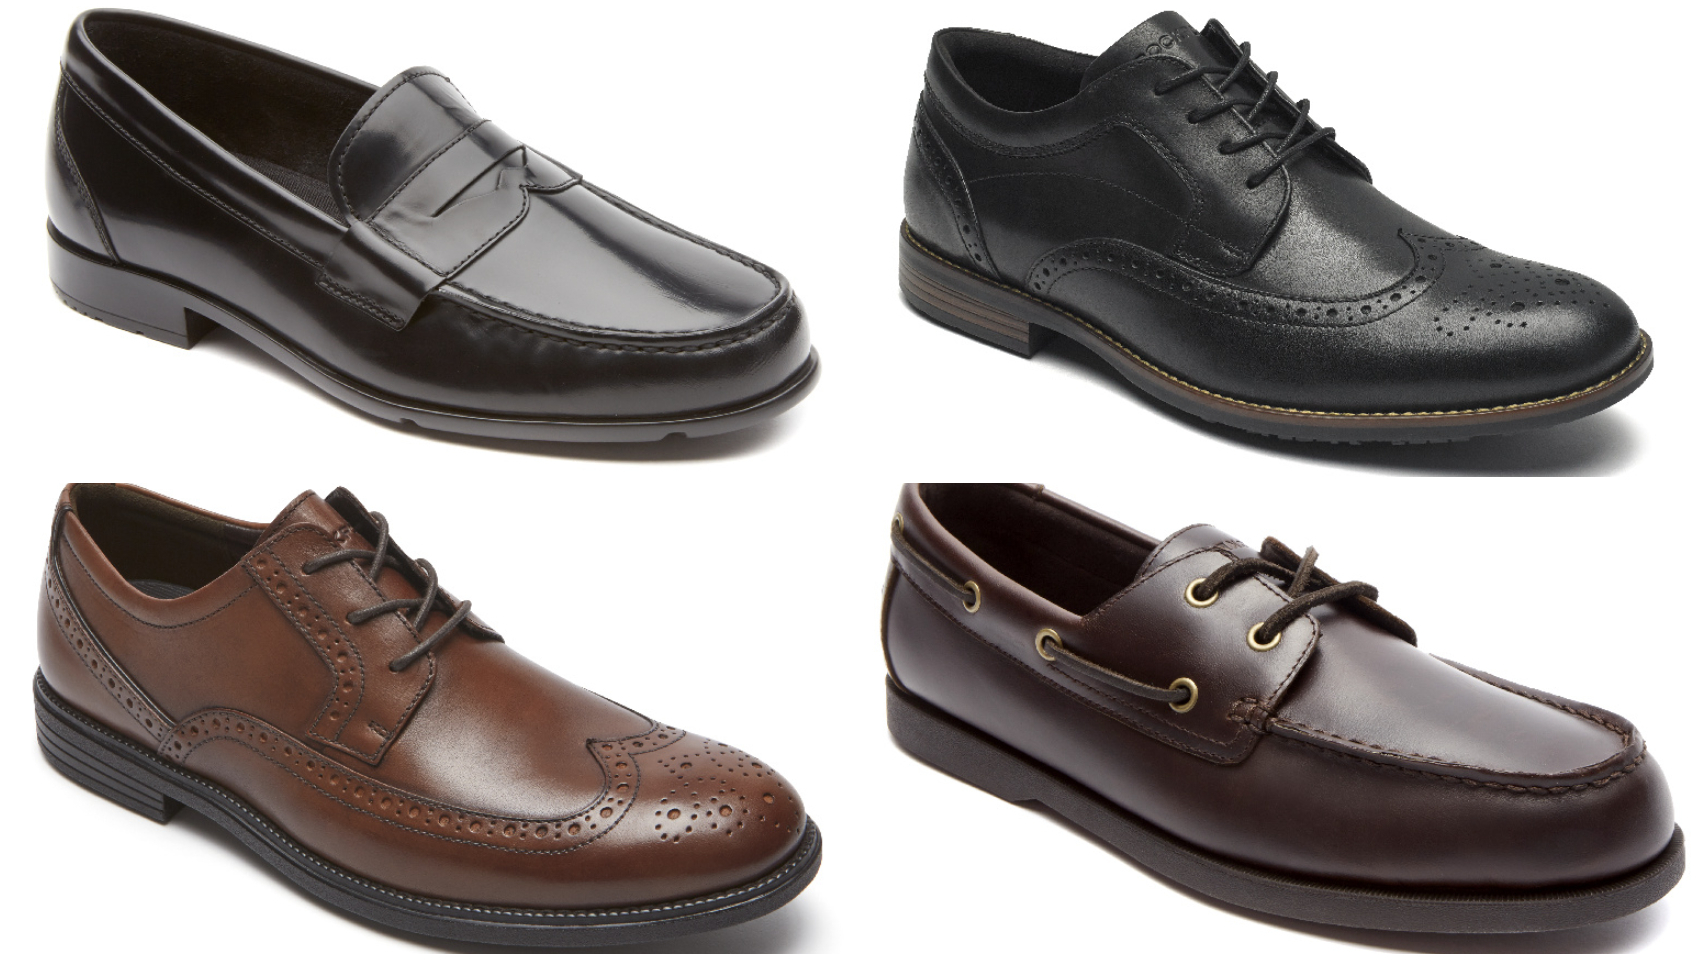 Los 5 modelos de zapatos para hombre que regalar en Navidad